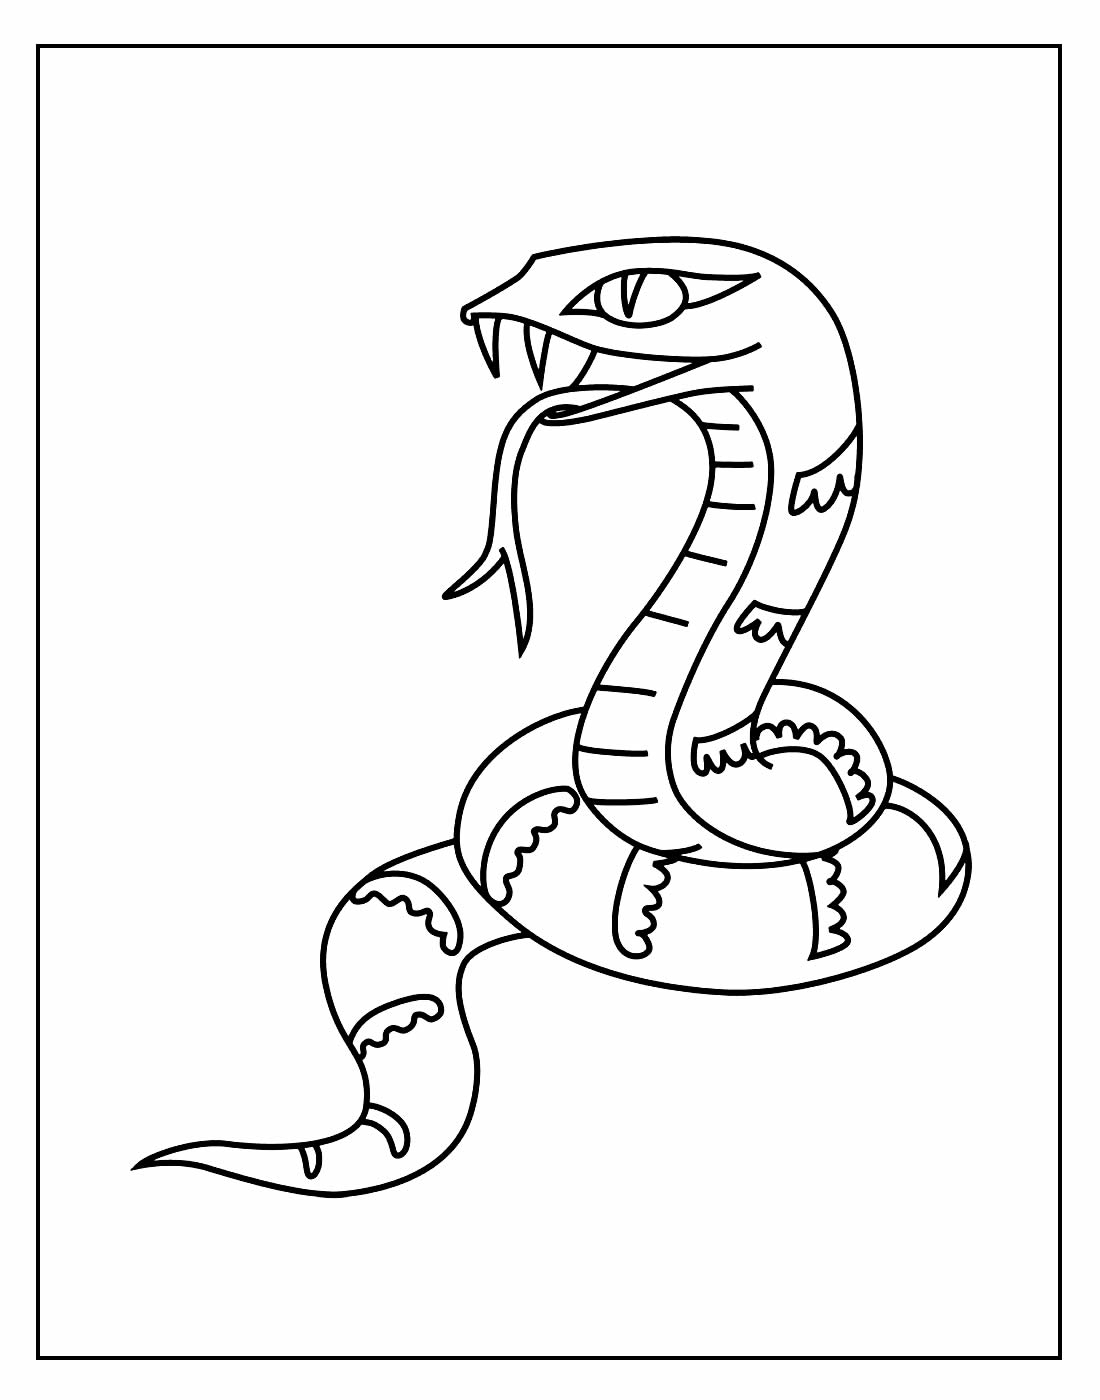 Змея рисунок раскраска